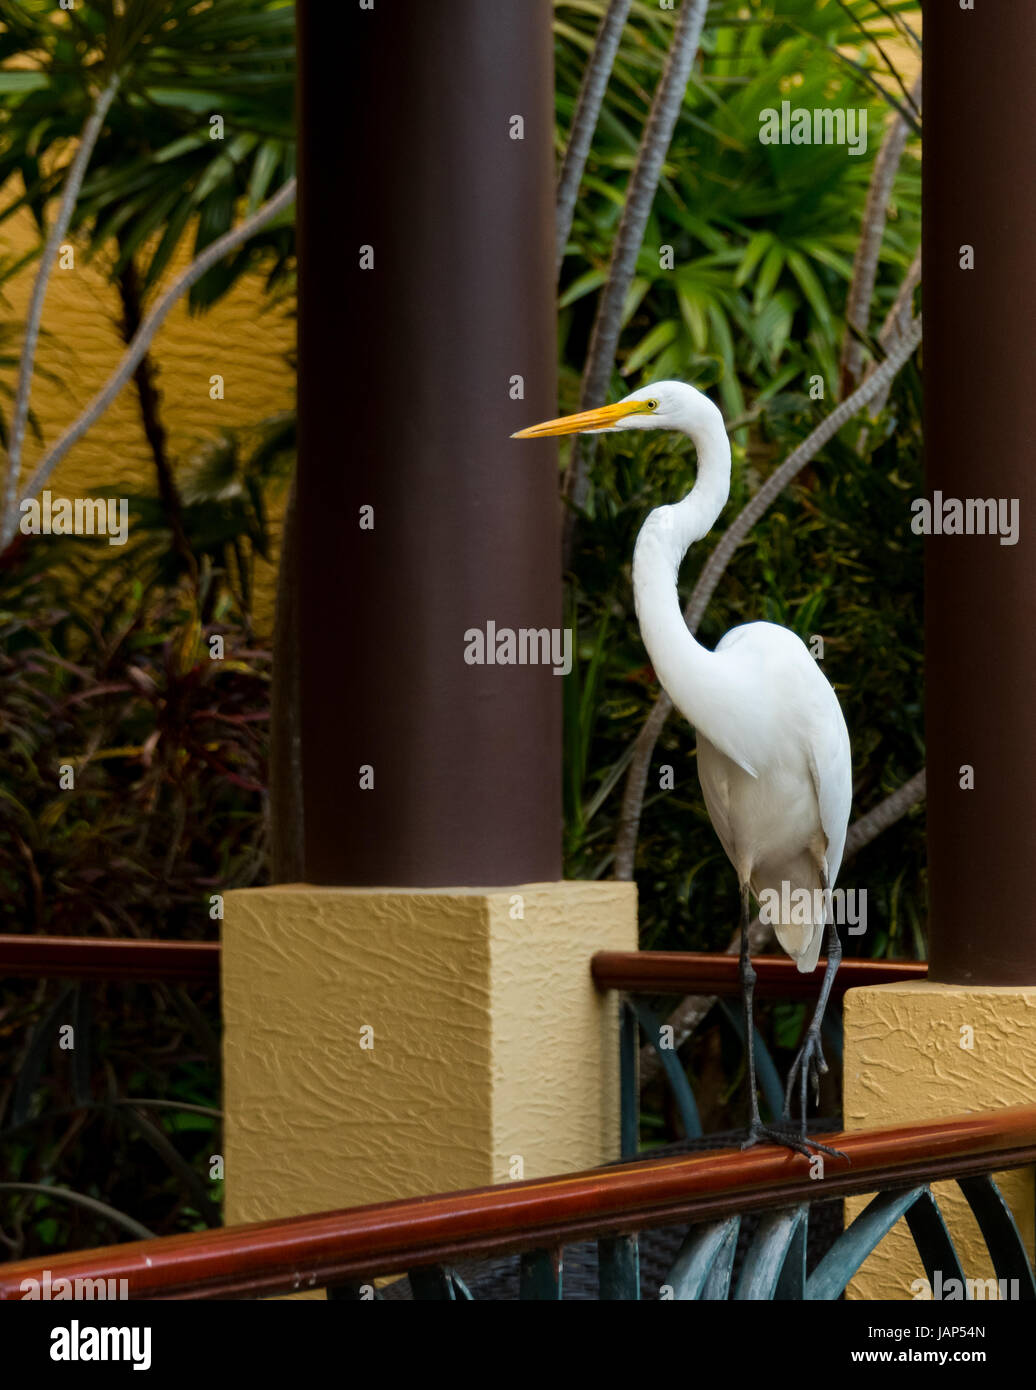 Large White Bird/Egret Perched On Railing Stock Photo